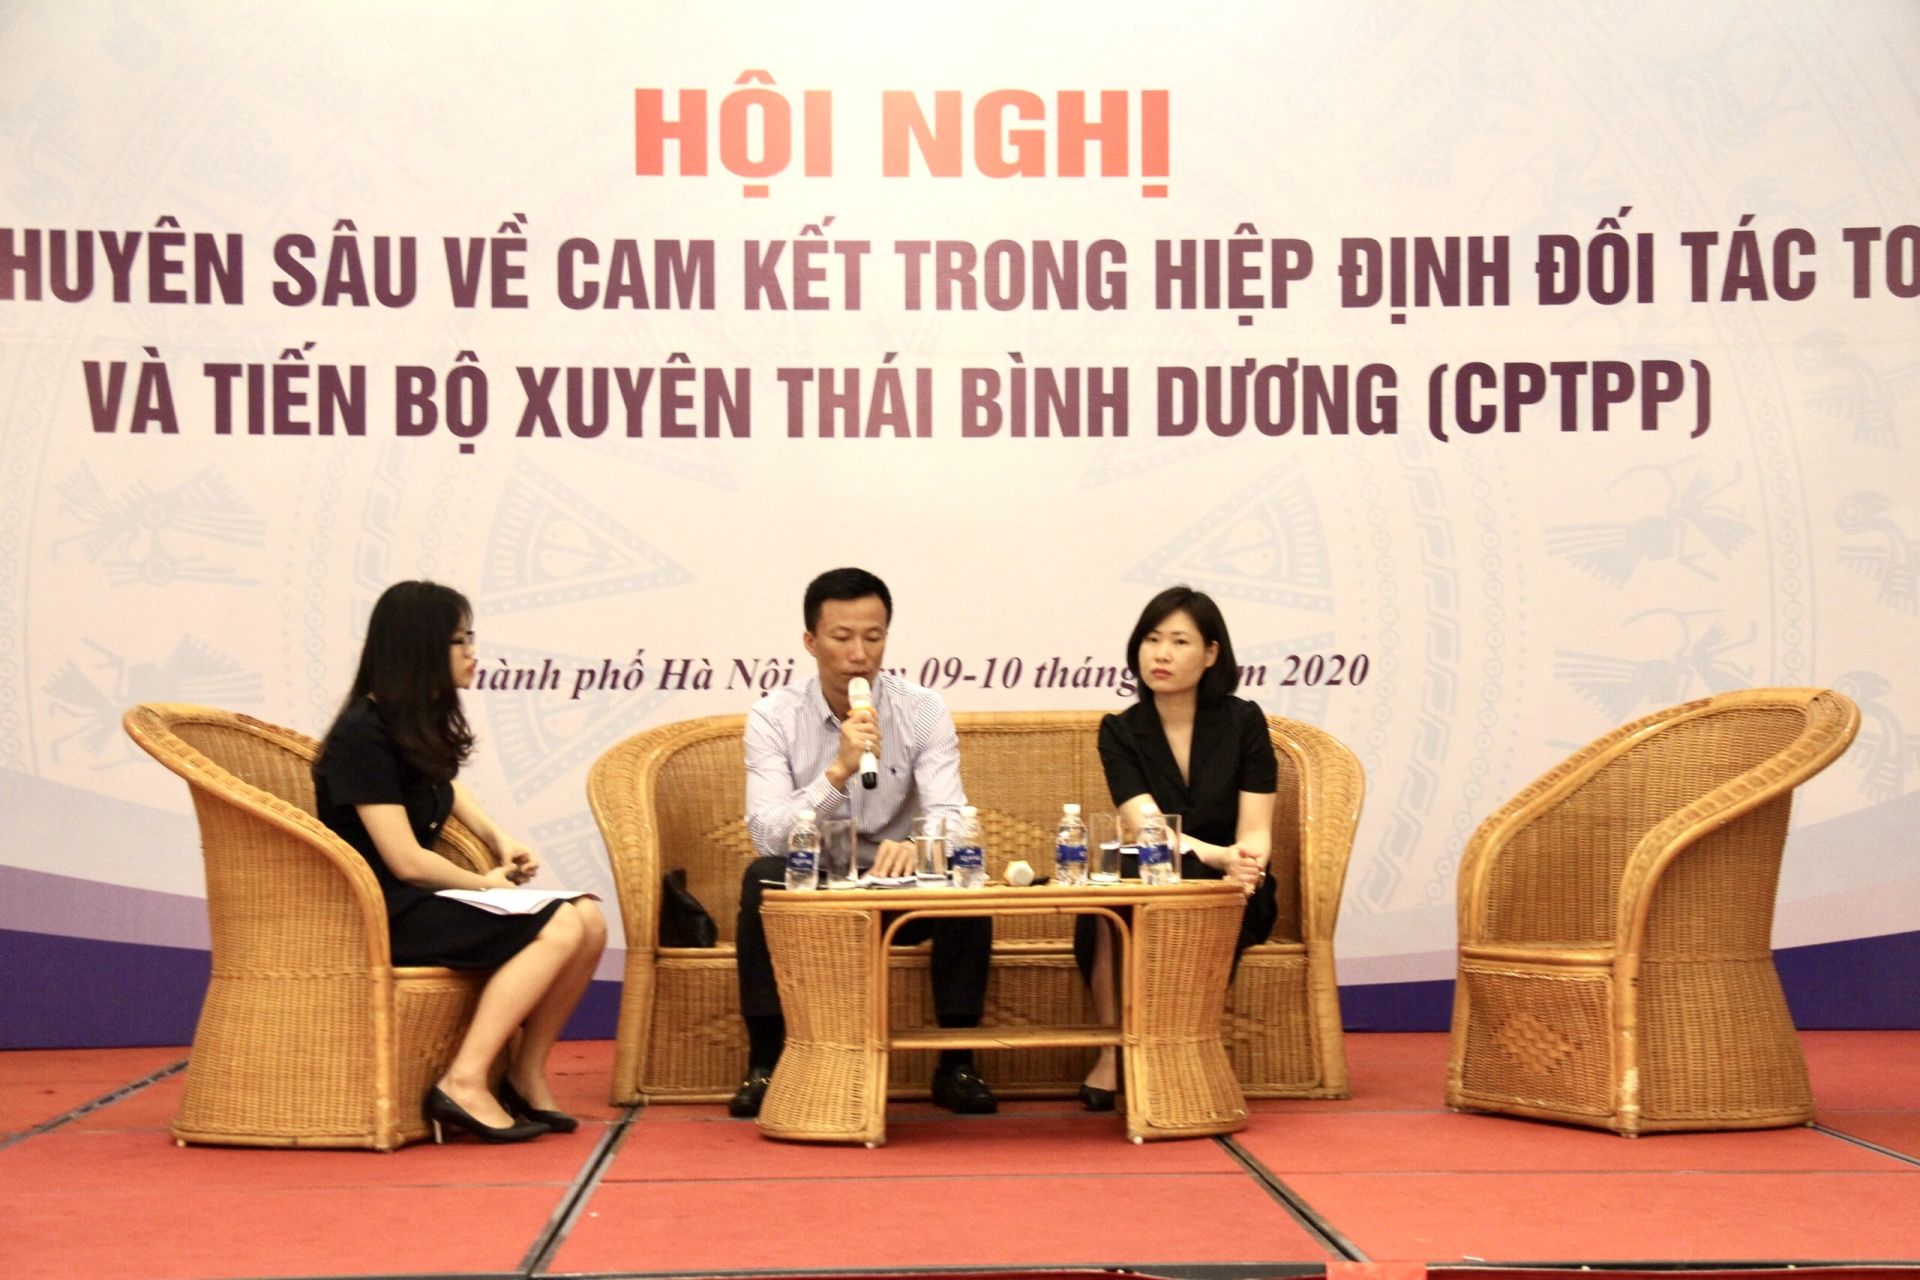 Trong 2 ngày, 9-10/7/2020, Bộ Công Thương đã phối hợp với Sở Công Thương thành phố Hà Nội tổ chức “Hội nghị tập huấn chuyên sâu về cam kết Hiệp định Đối tác Toàn diện và Tiến bộ xuyên Thái Bình Dương (CPTPP)”